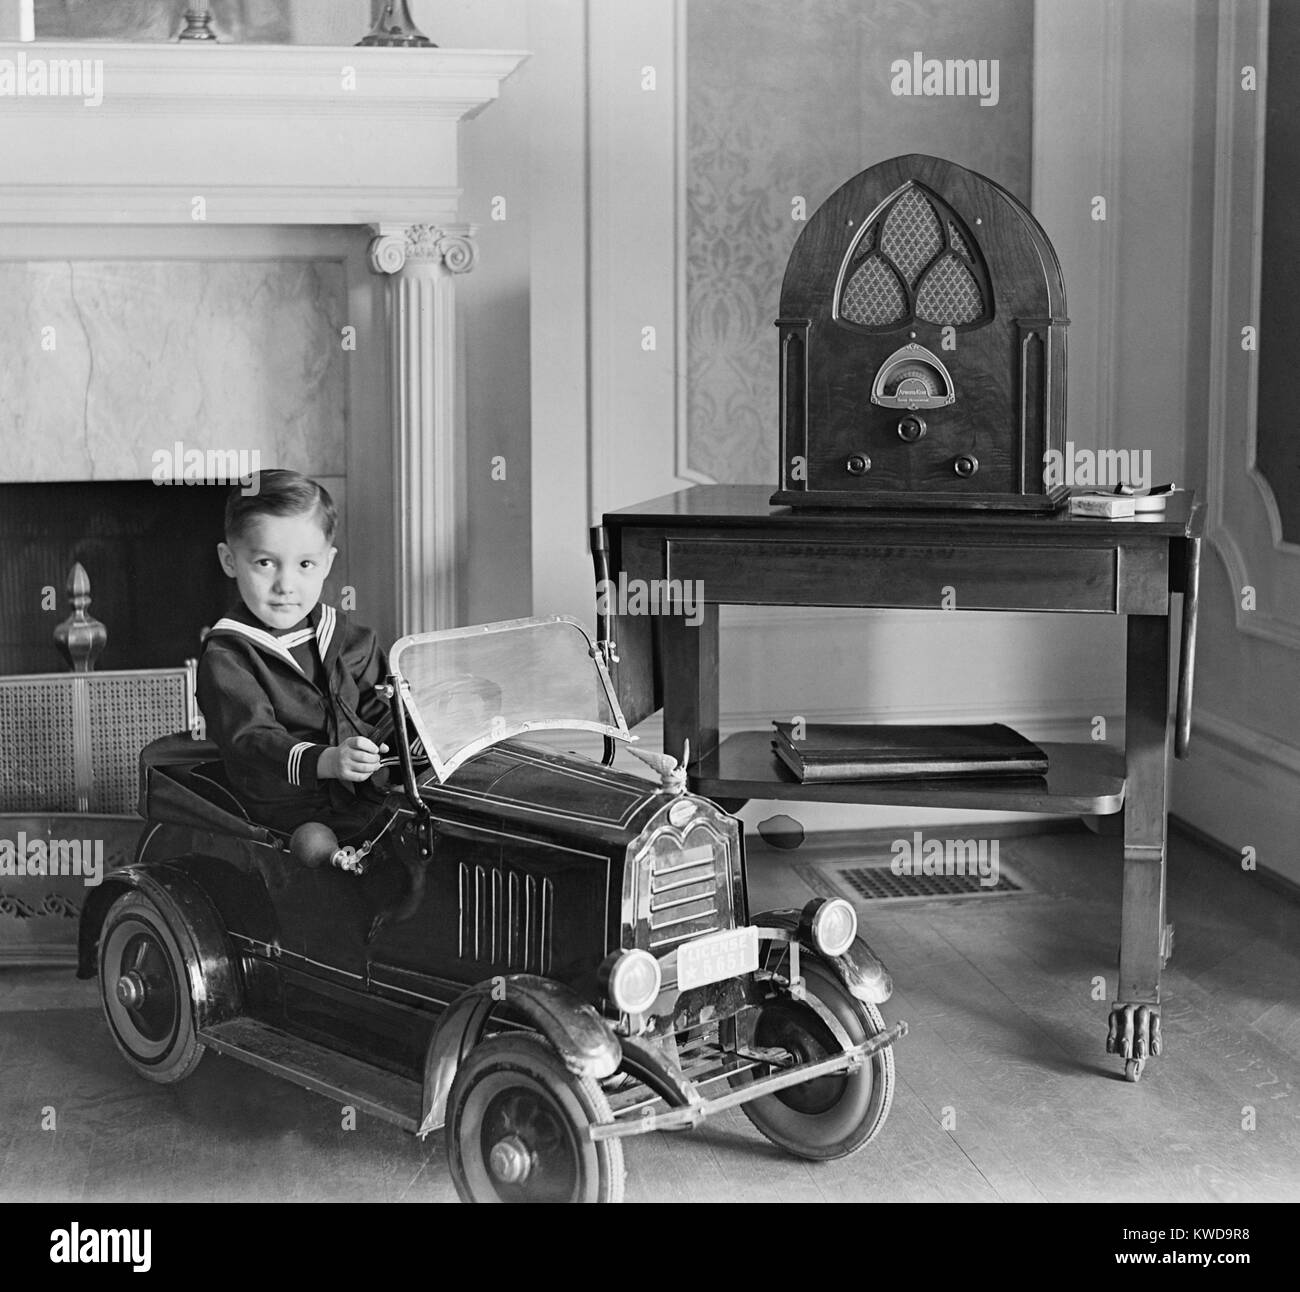 Kleinen Jungen in seinem Spielzeug Automobil neben einem Stand der Technik Atwater Kent Radio. Das Radio verfügt über Lautsprecher eingeschlossen hinter dem Stoff Öffnungen im eleganten Gehäuse abgedeckt (BSLOC 2016 10 59) Stockfoto